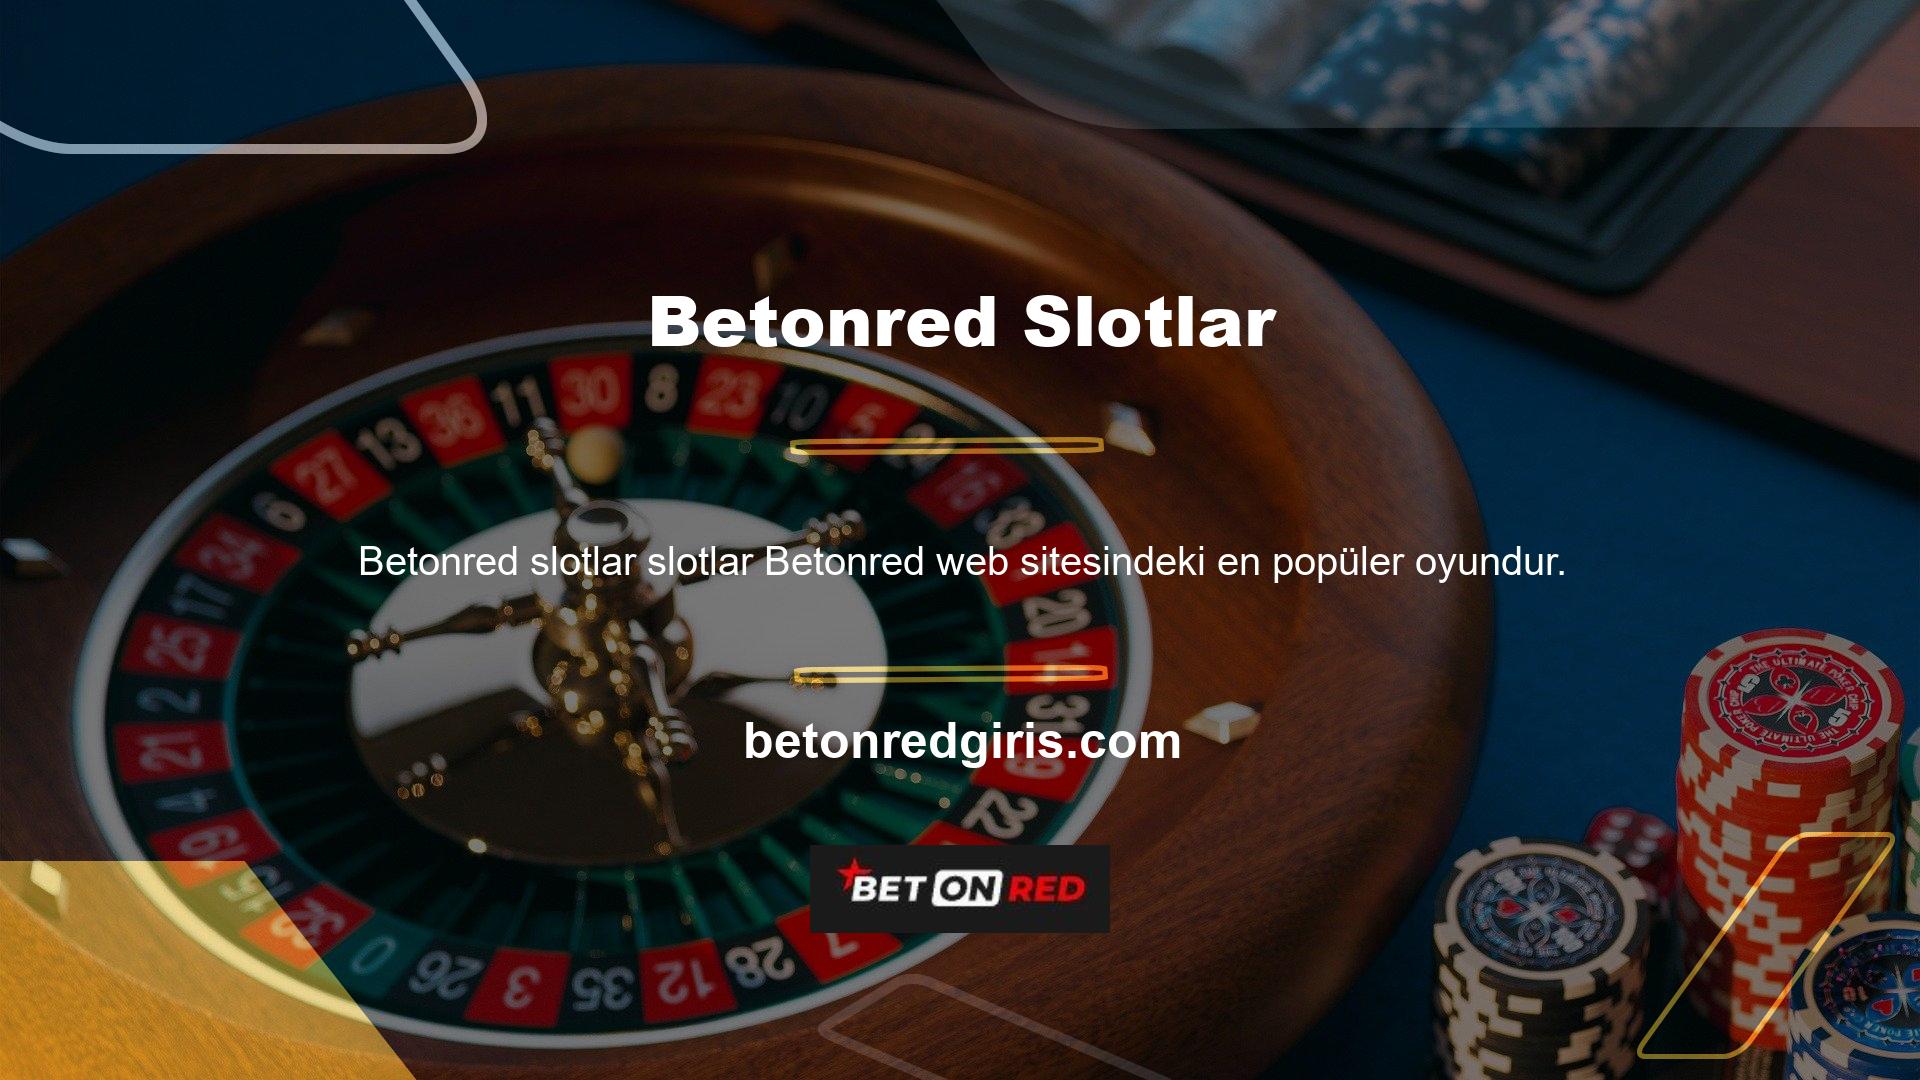 Betonred casino oyunları arasında blackjack, rulet, bakara ve keno gibi oyunlar yer almaktadır